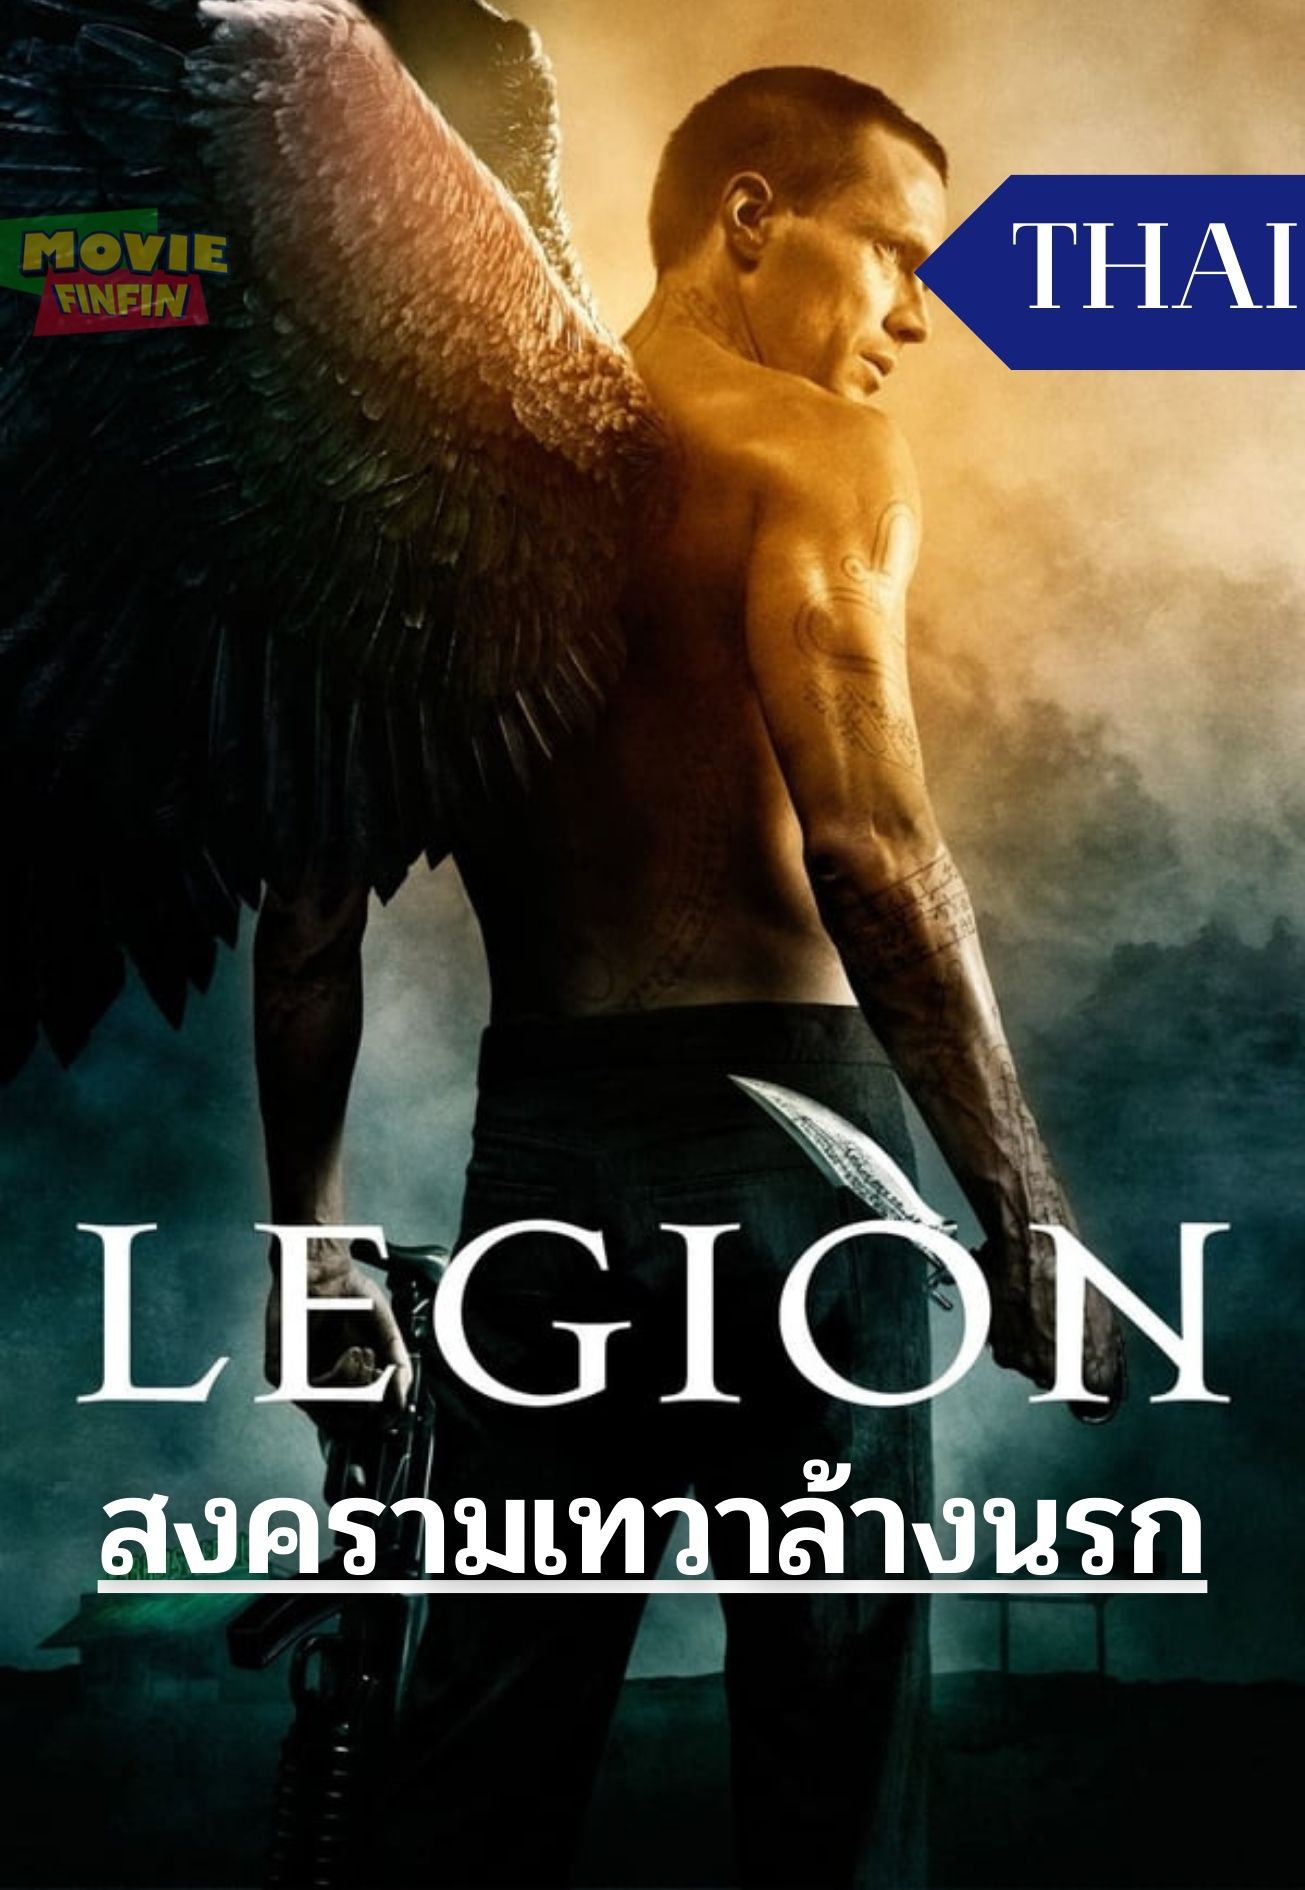 Legion (2009) สงครามเทวาล้างนรก